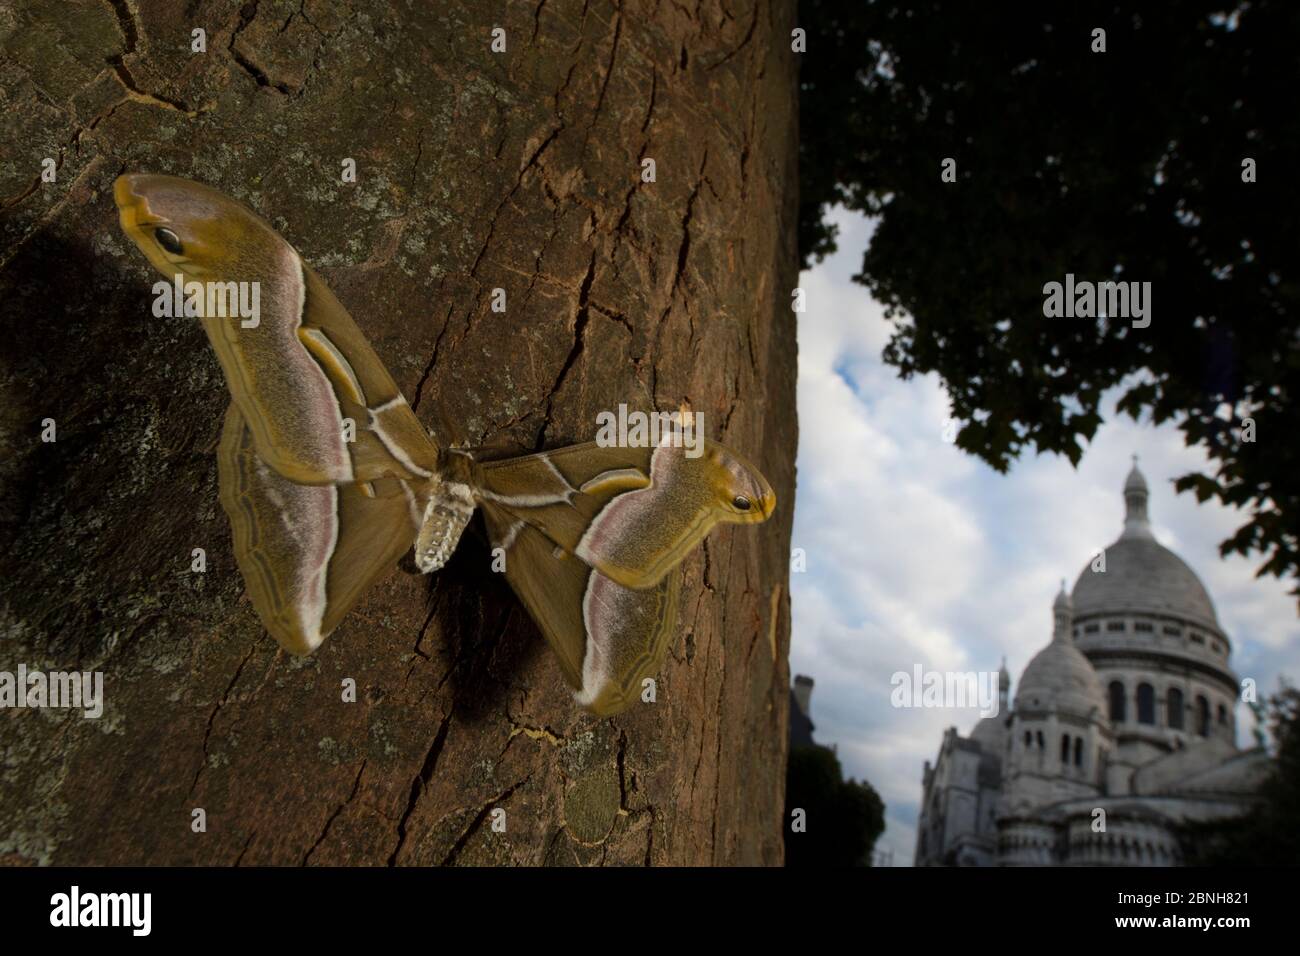 Ailanthus silkmoth (Samia cynthia) une espèce introduite, prise contre le tronc d'arbre avec Sacre Couer derrière, Paris, France septembre Banque D'Images